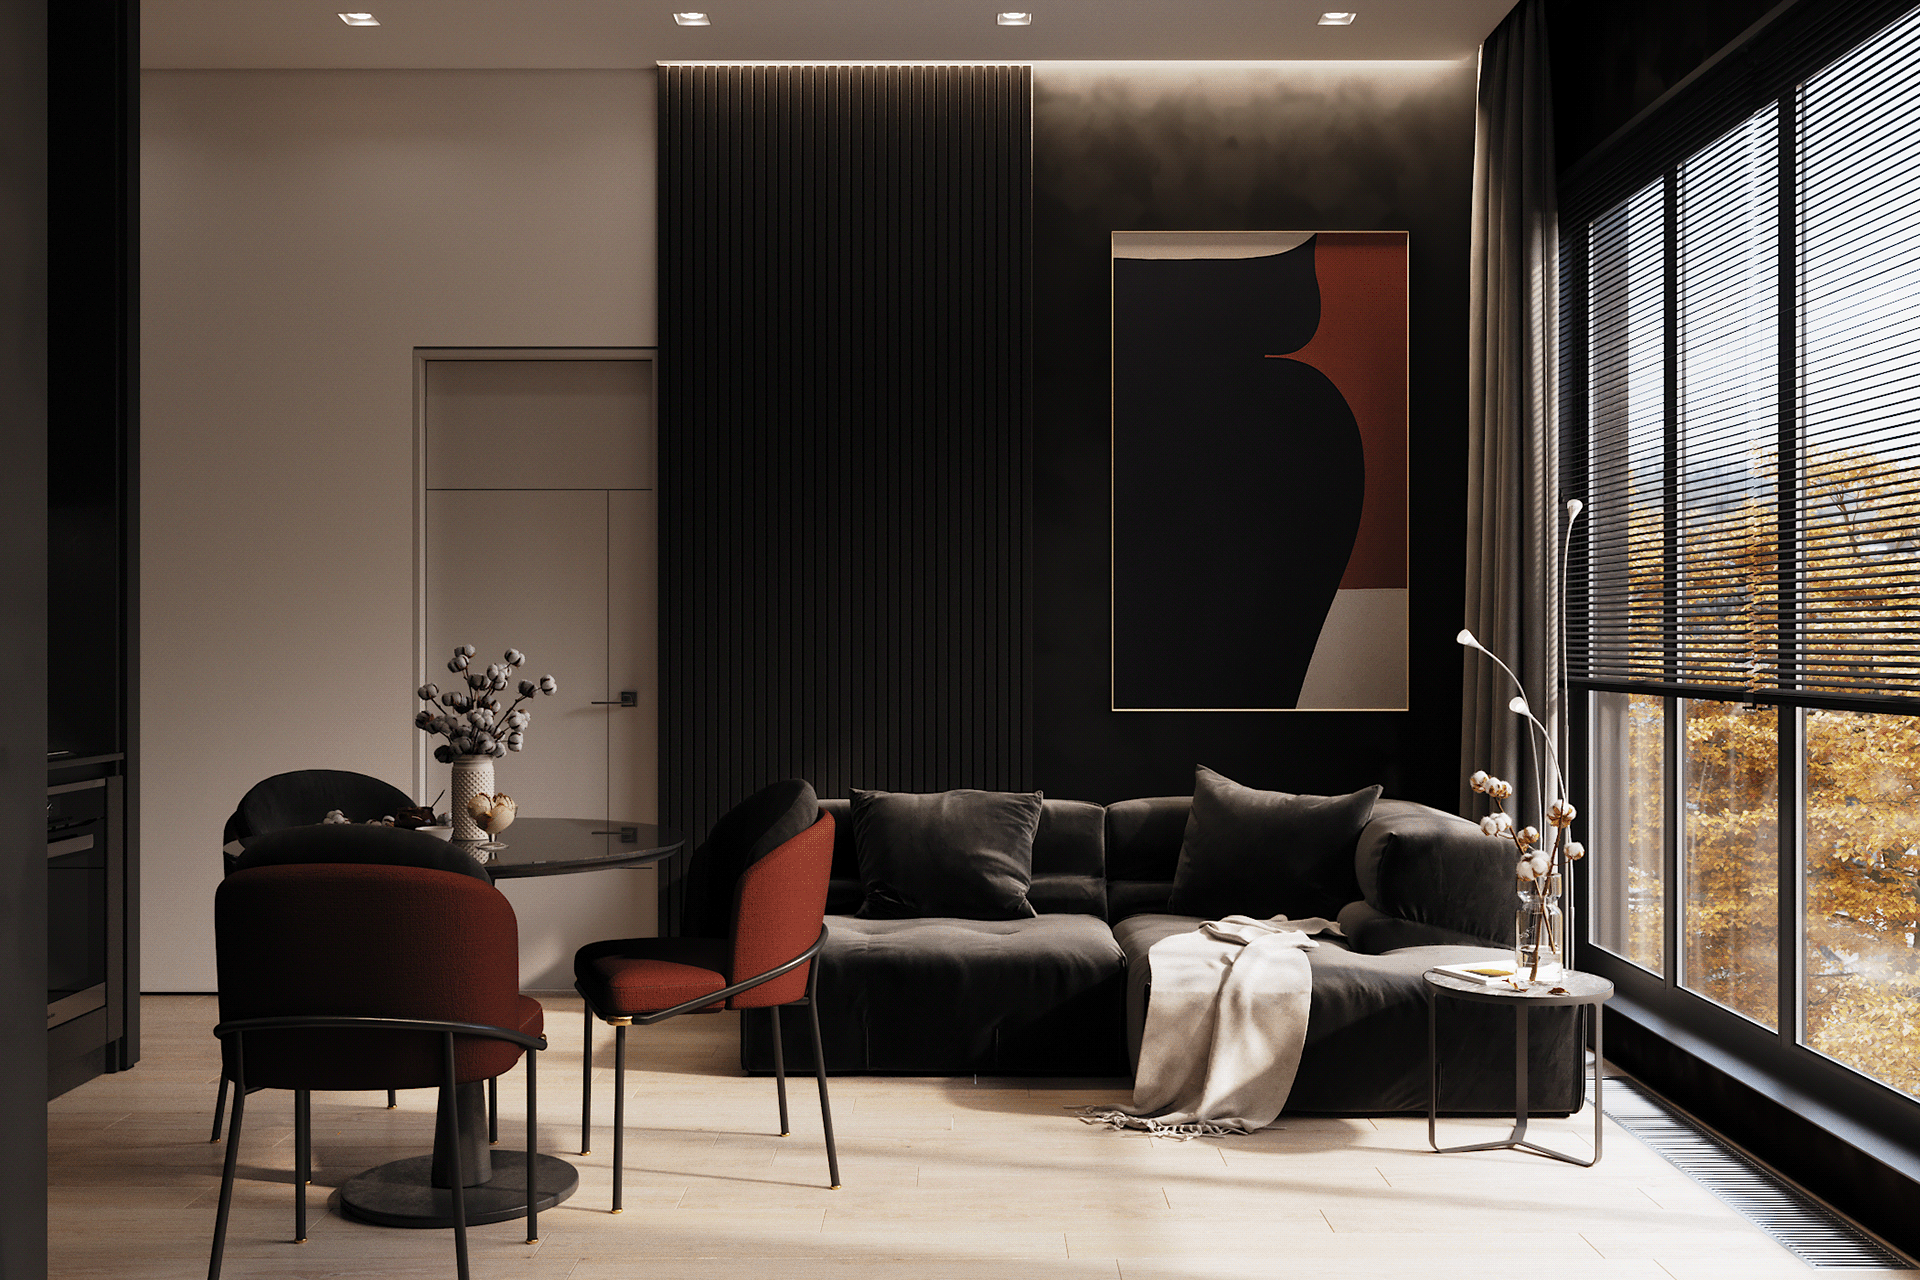 IconP - Thiết kế chung cư căn hộ phong cách hiện đại, gam màu đen độc đáo, kết hợp với tranh, ánh sáng và gỗ